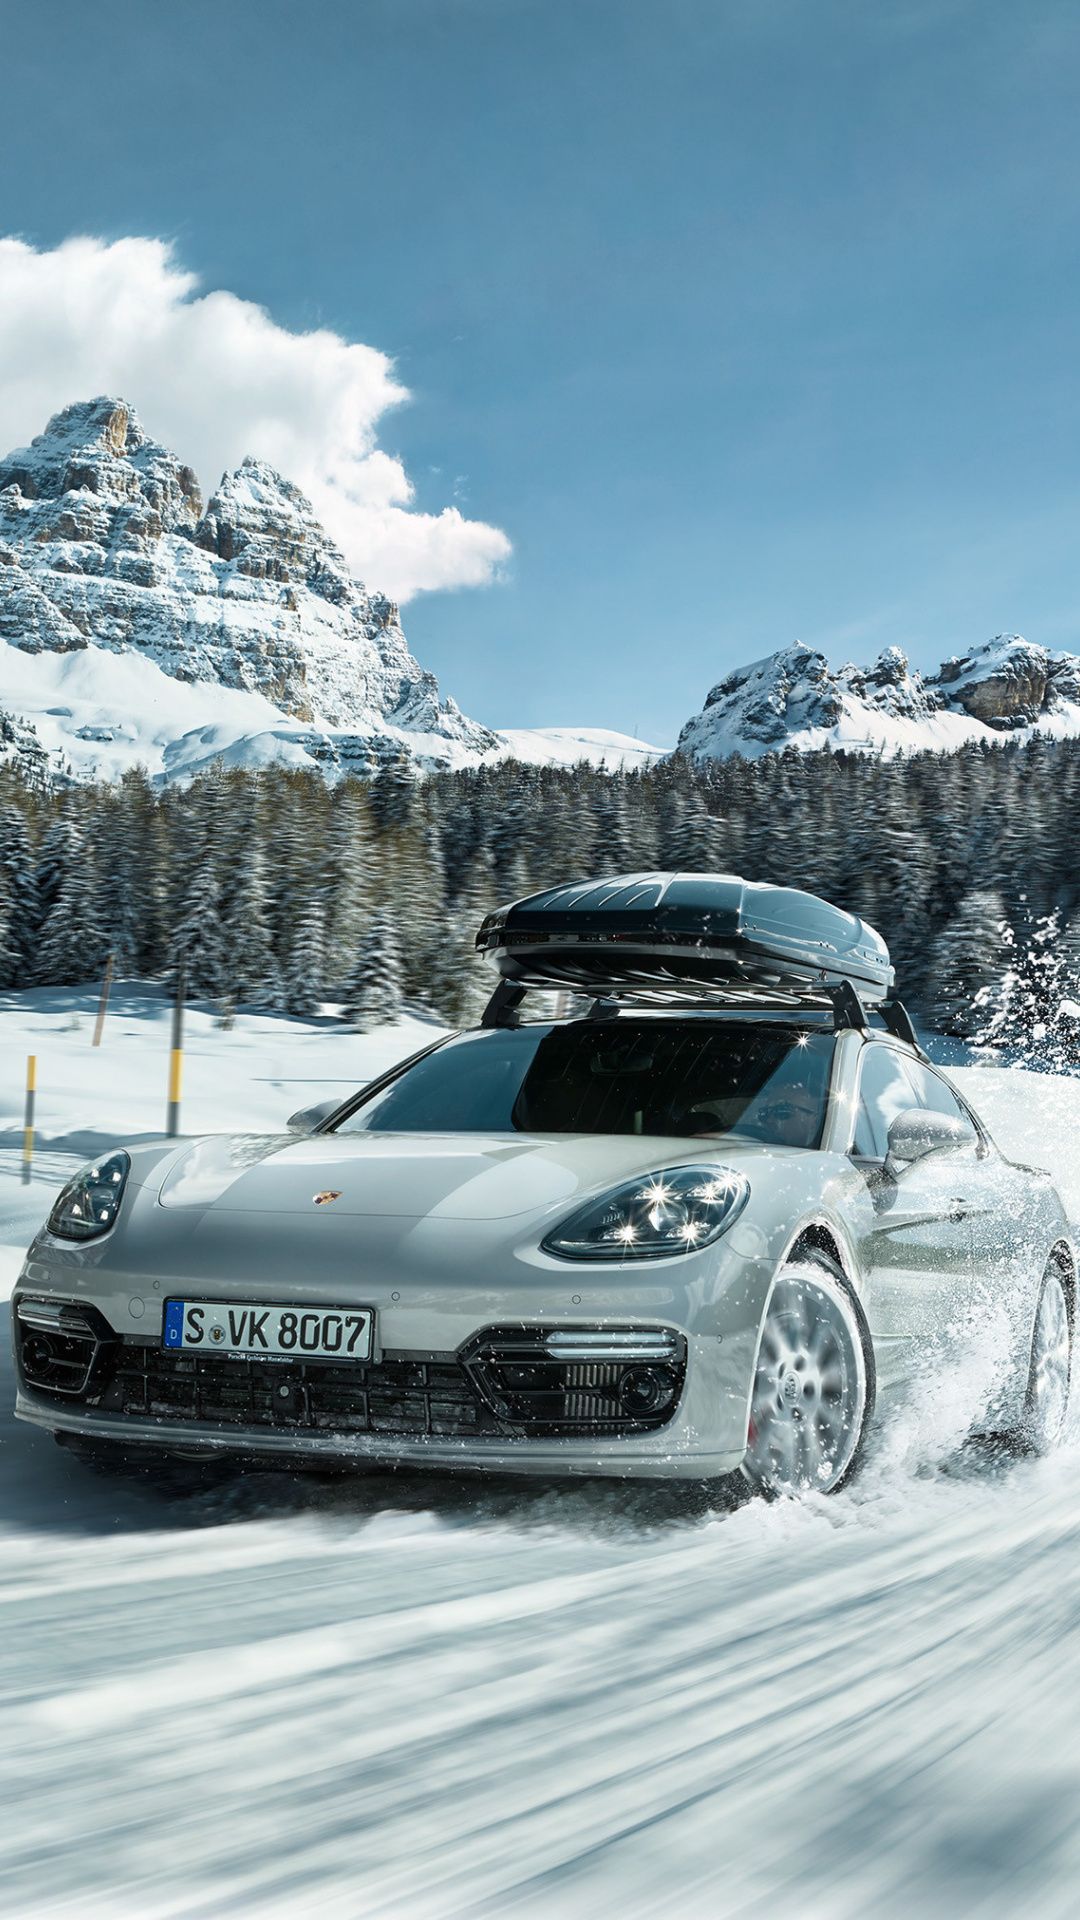 Porsche, Sports Car, Off Road, Snow, 1080x1920 Wallpaper. Porsche, Car, Touring Car Racing